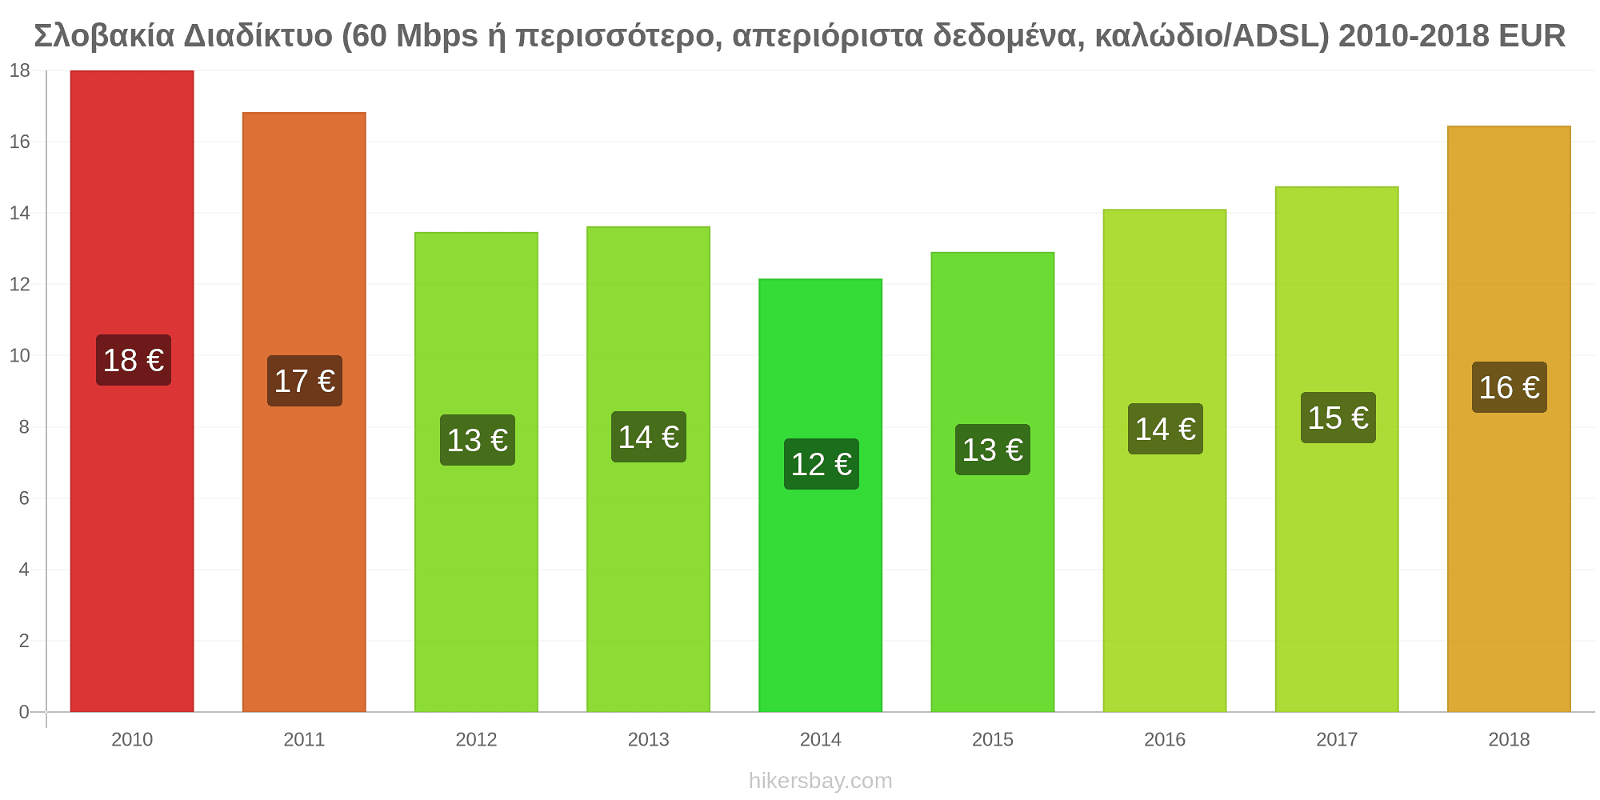 Σλοβακία αλλαγές τιμών Διαδίκτυο (60 Mbps ή περισσότερο, απεριόριστα δεδομένα, καλώδιο/ADSL) hikersbay.com